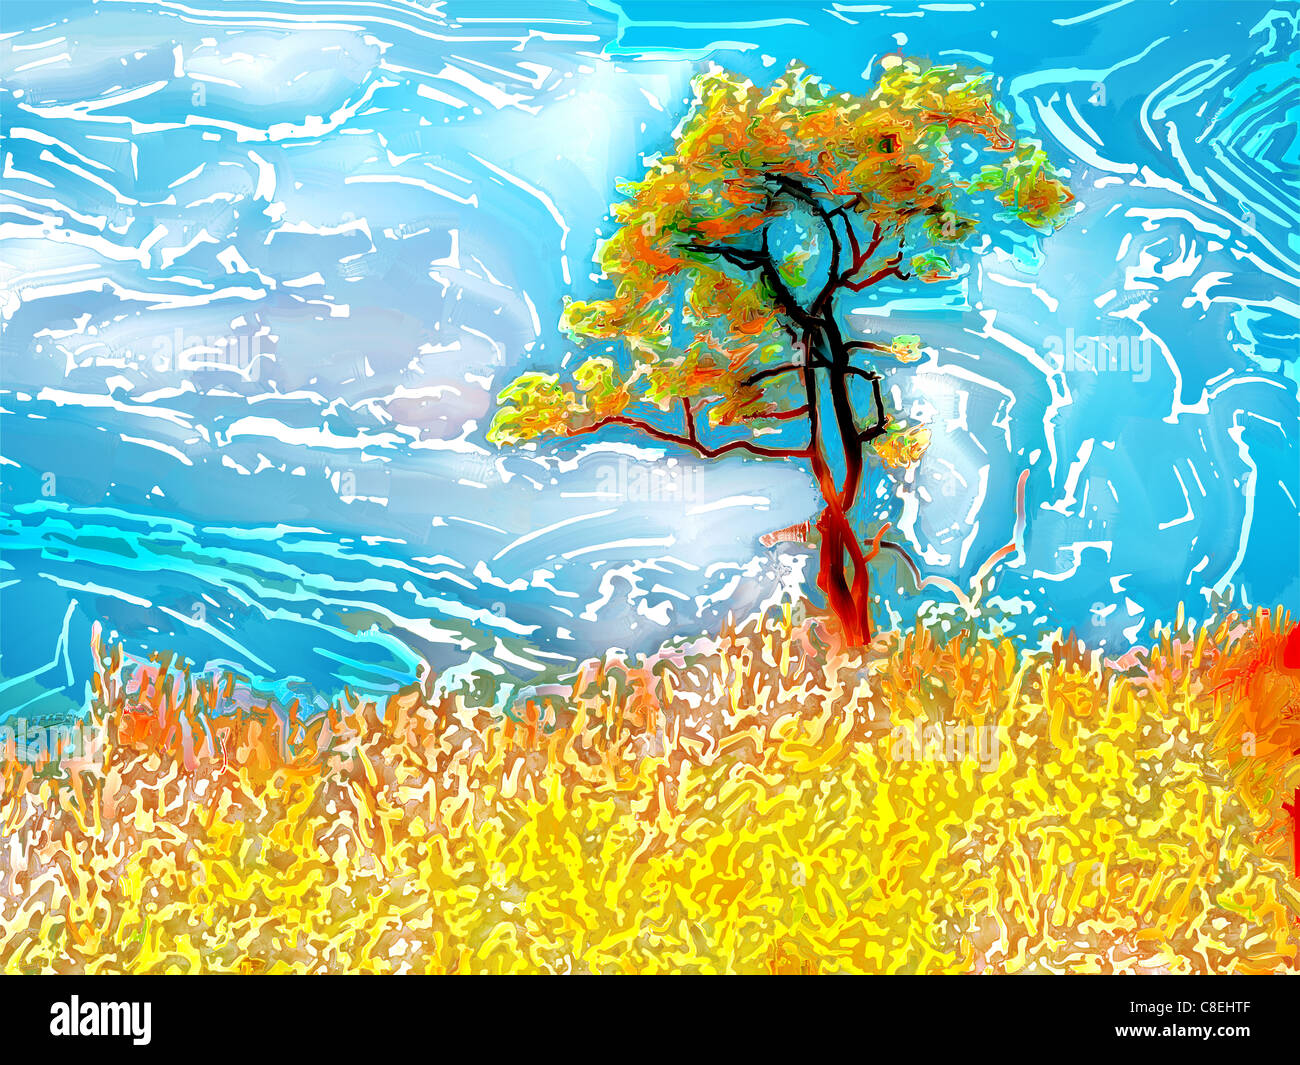 En peinture numérique woodcut style batik d'un arbre, l'herbe et le ciel Banque D'Images